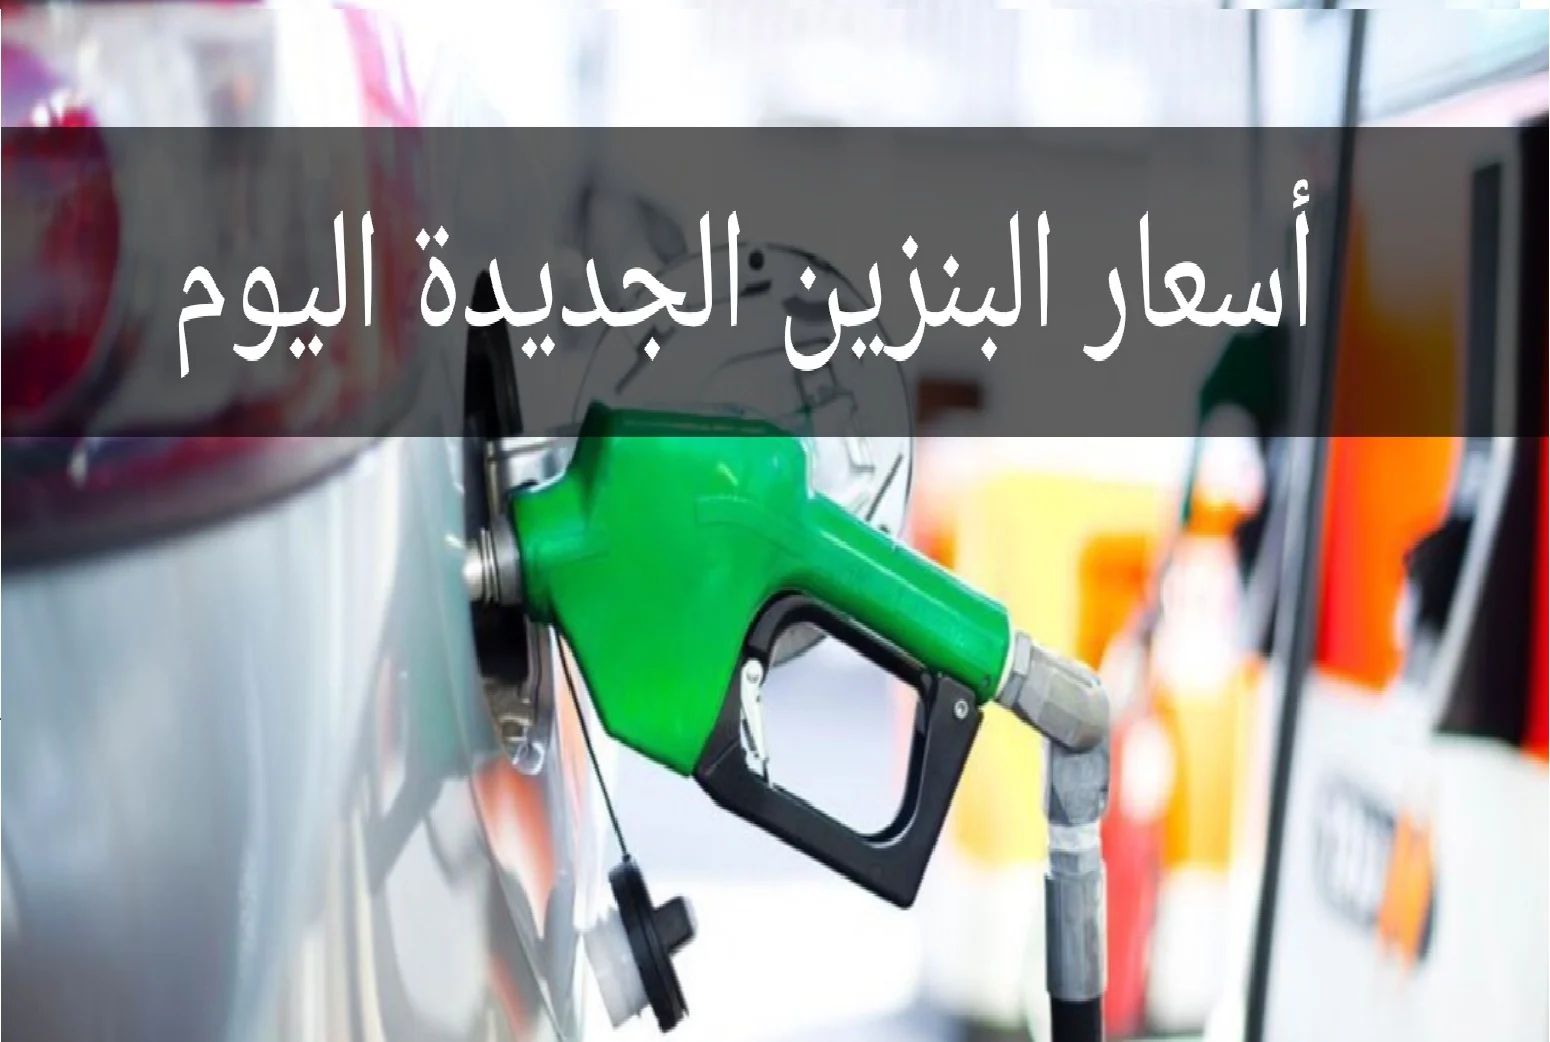  اسعار البنزين في السعودية لشهر مارس